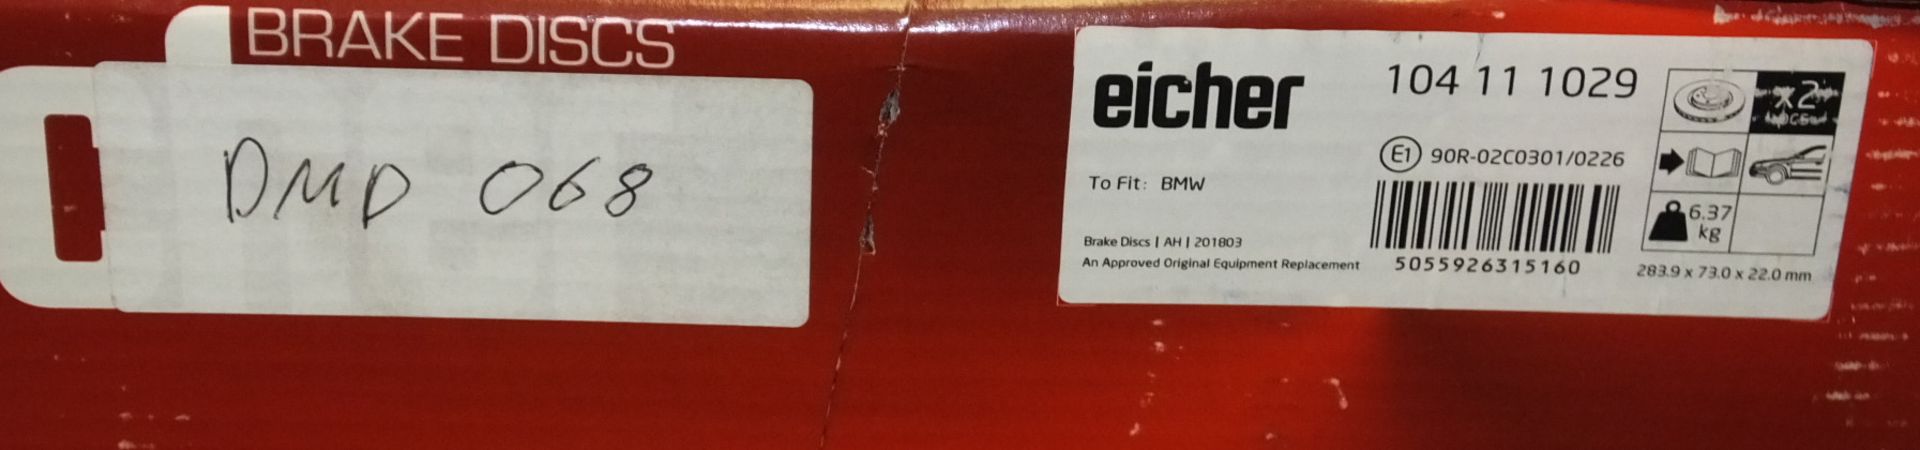 2x Eicher Brake Disc Sets - Models - DM2623 & DMD068 - Image 3 of 3